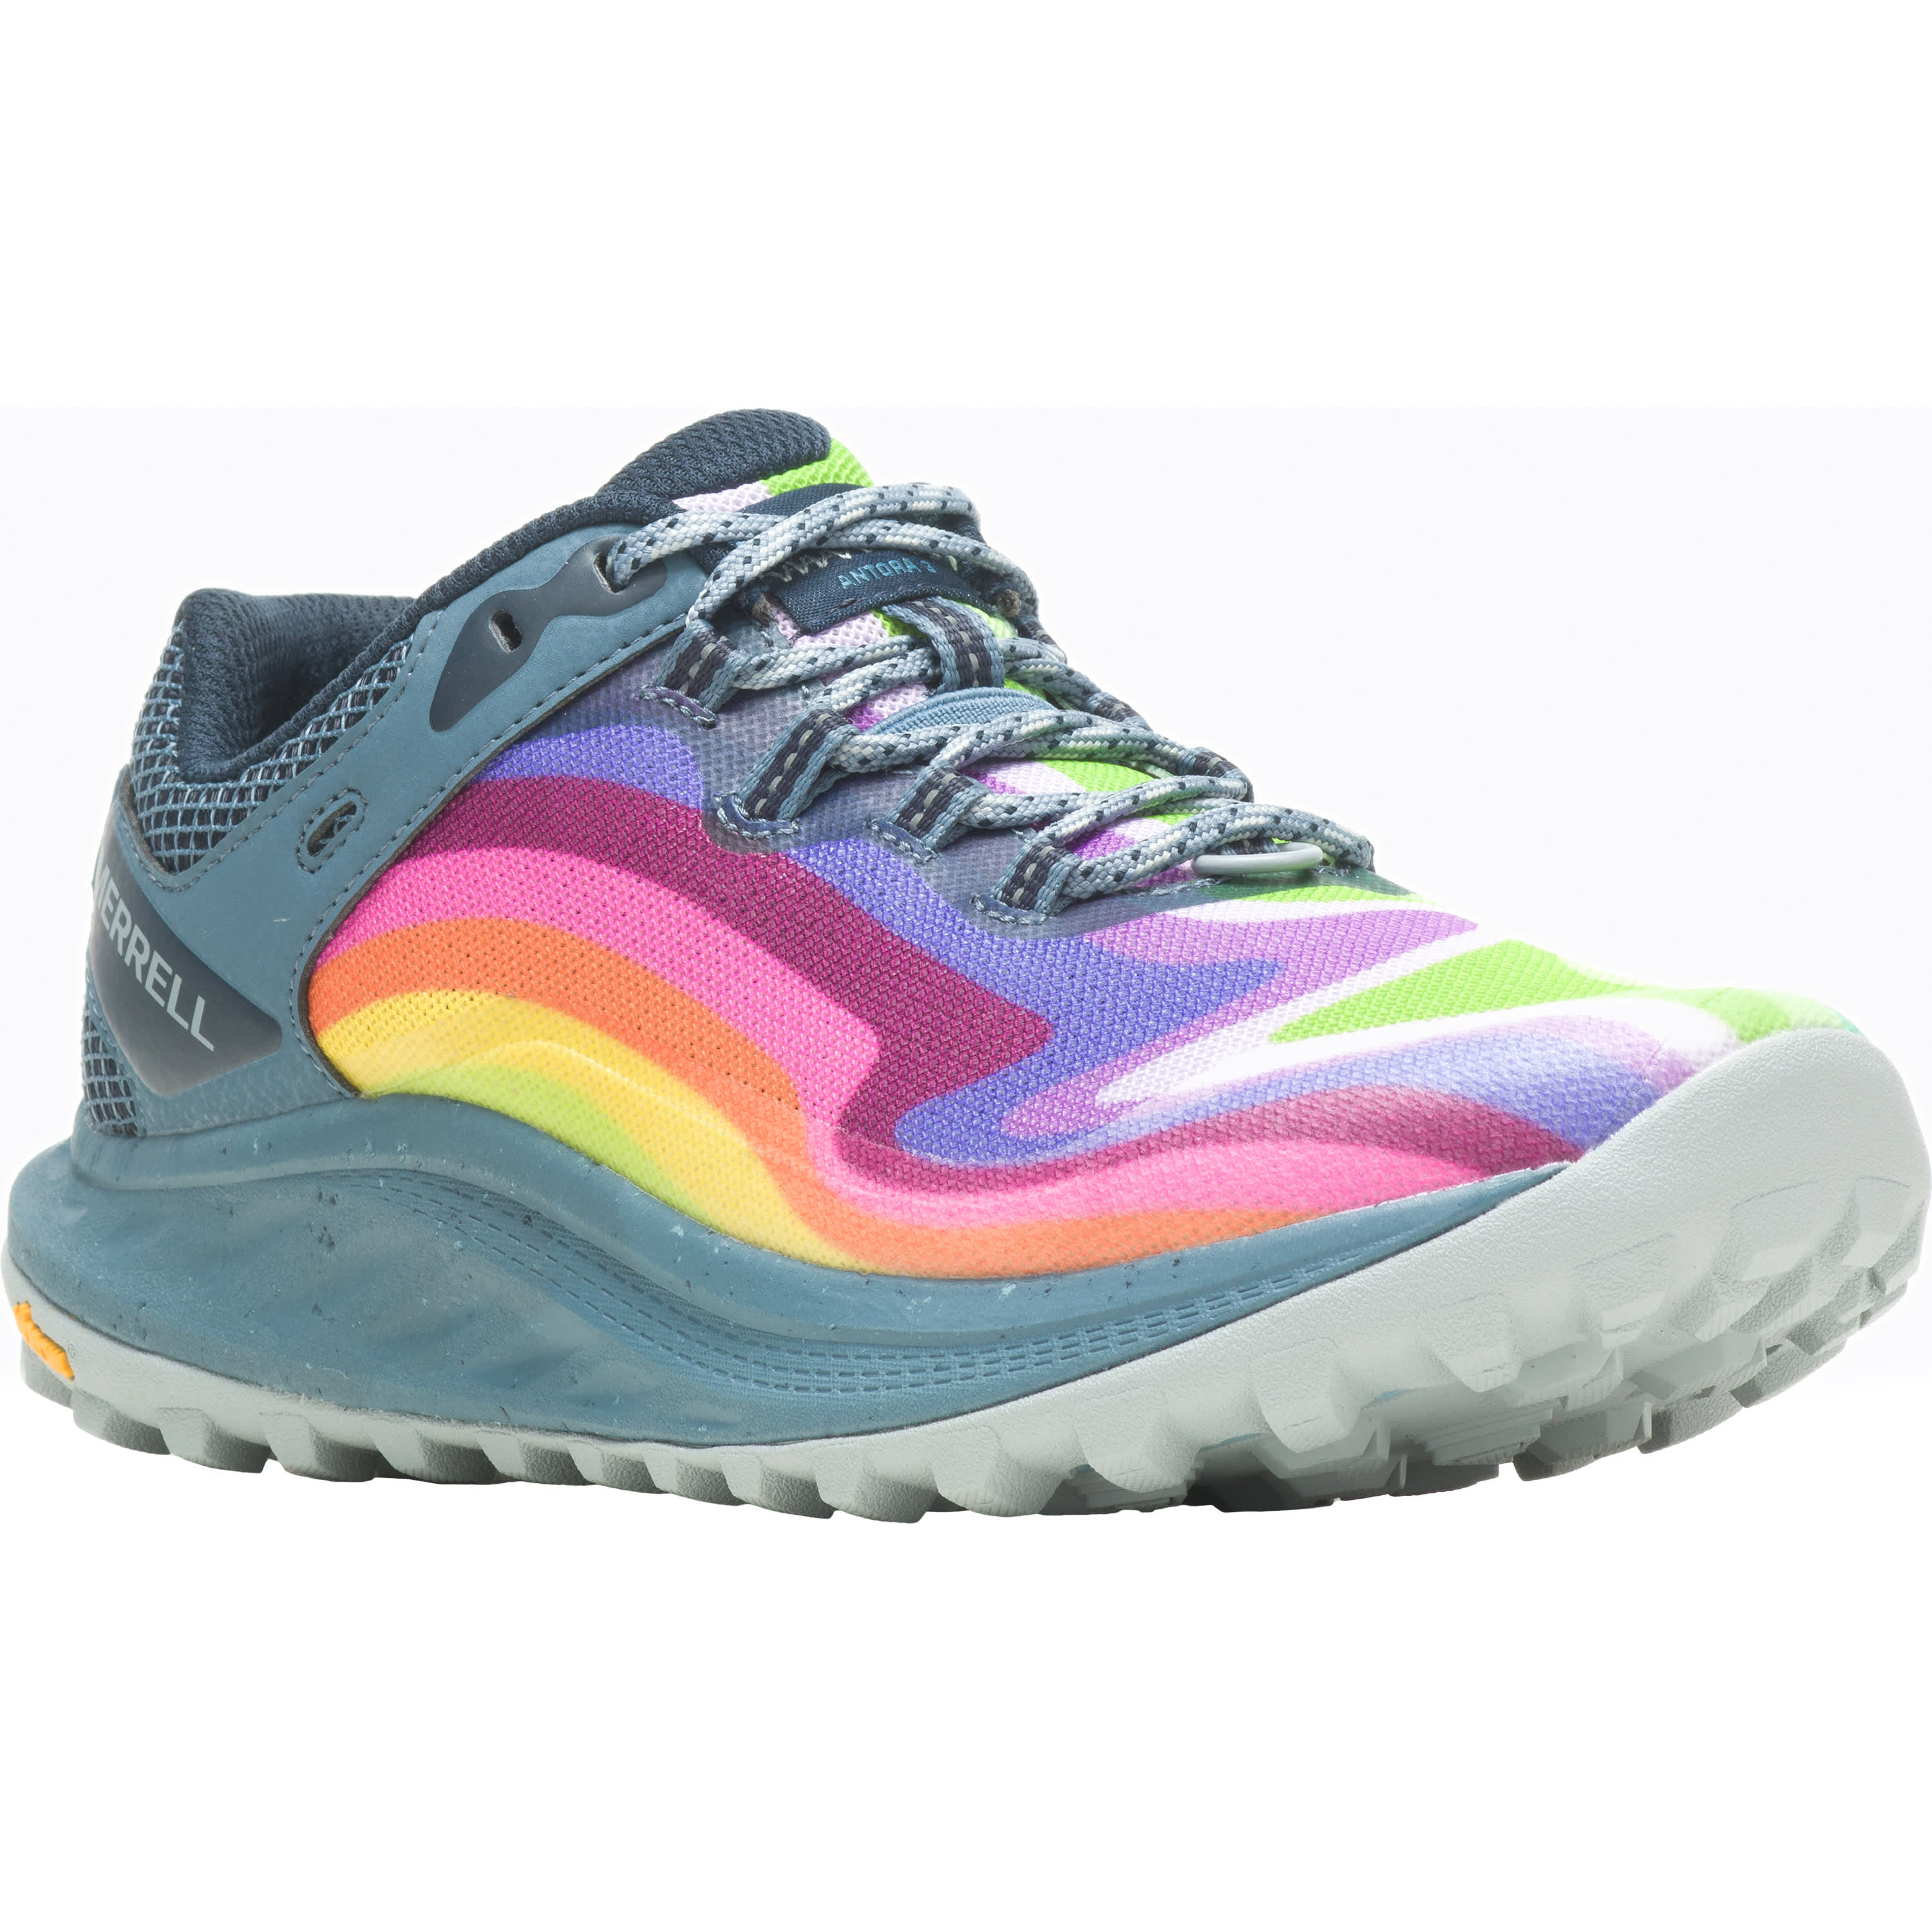 Merrell® Women’s Antora 3 Rainbow Trail Running Shoe